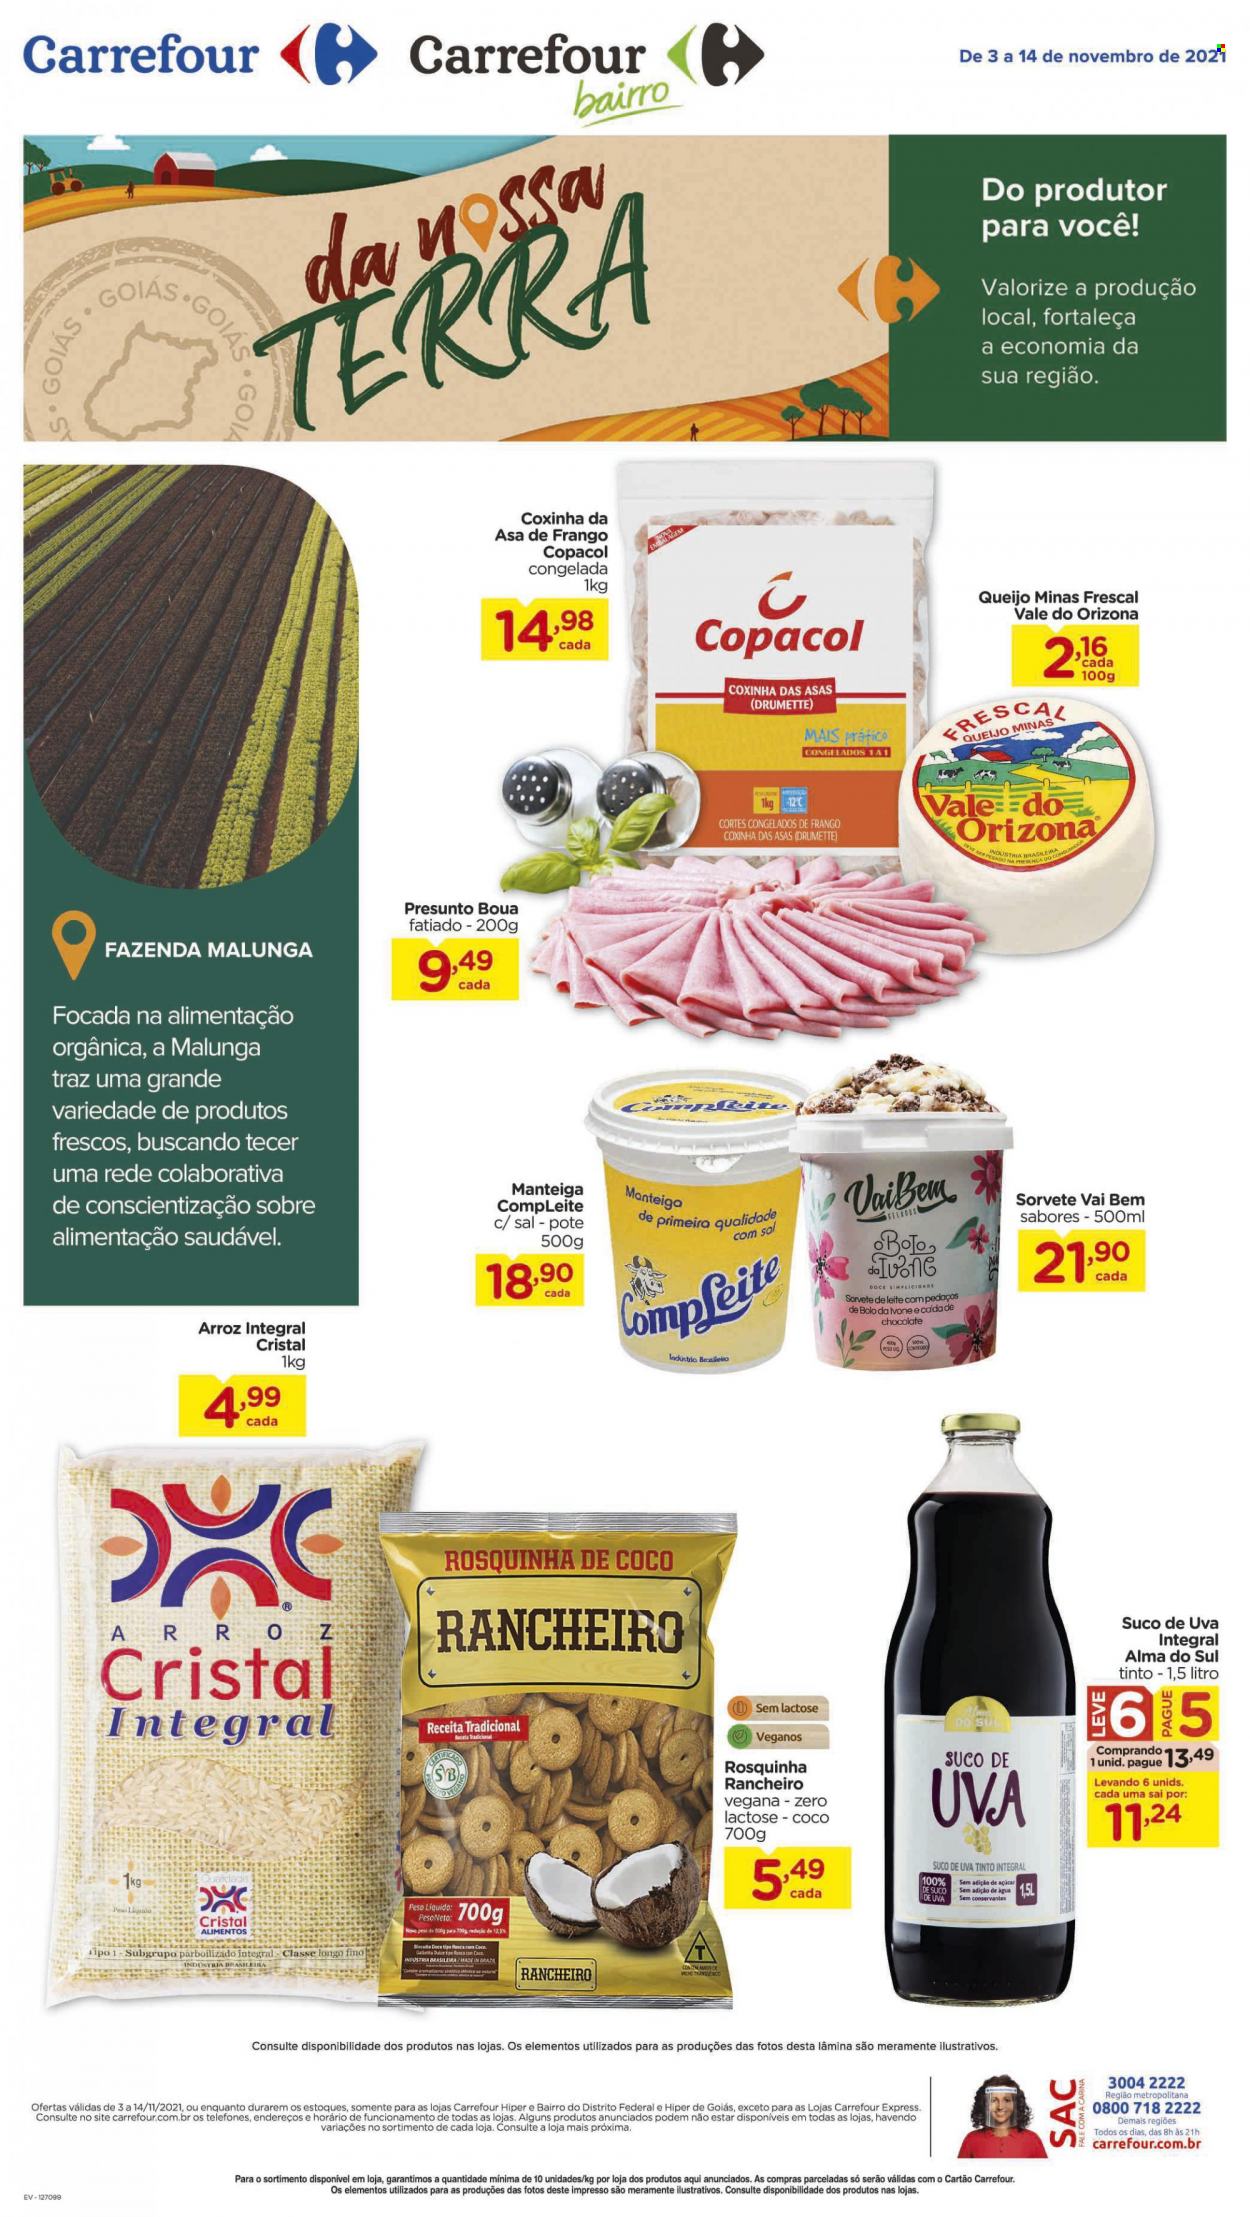 thumbnail - Folheto Carrefour Bairro - 03/11/2021 - 14/11/2021 - Produtos em promoção - asa de frango, coxinha de asa, queijo, queijo minas, manteiga, sorvete, rosquinhas, arroz integral, suco de uva. Página 1.